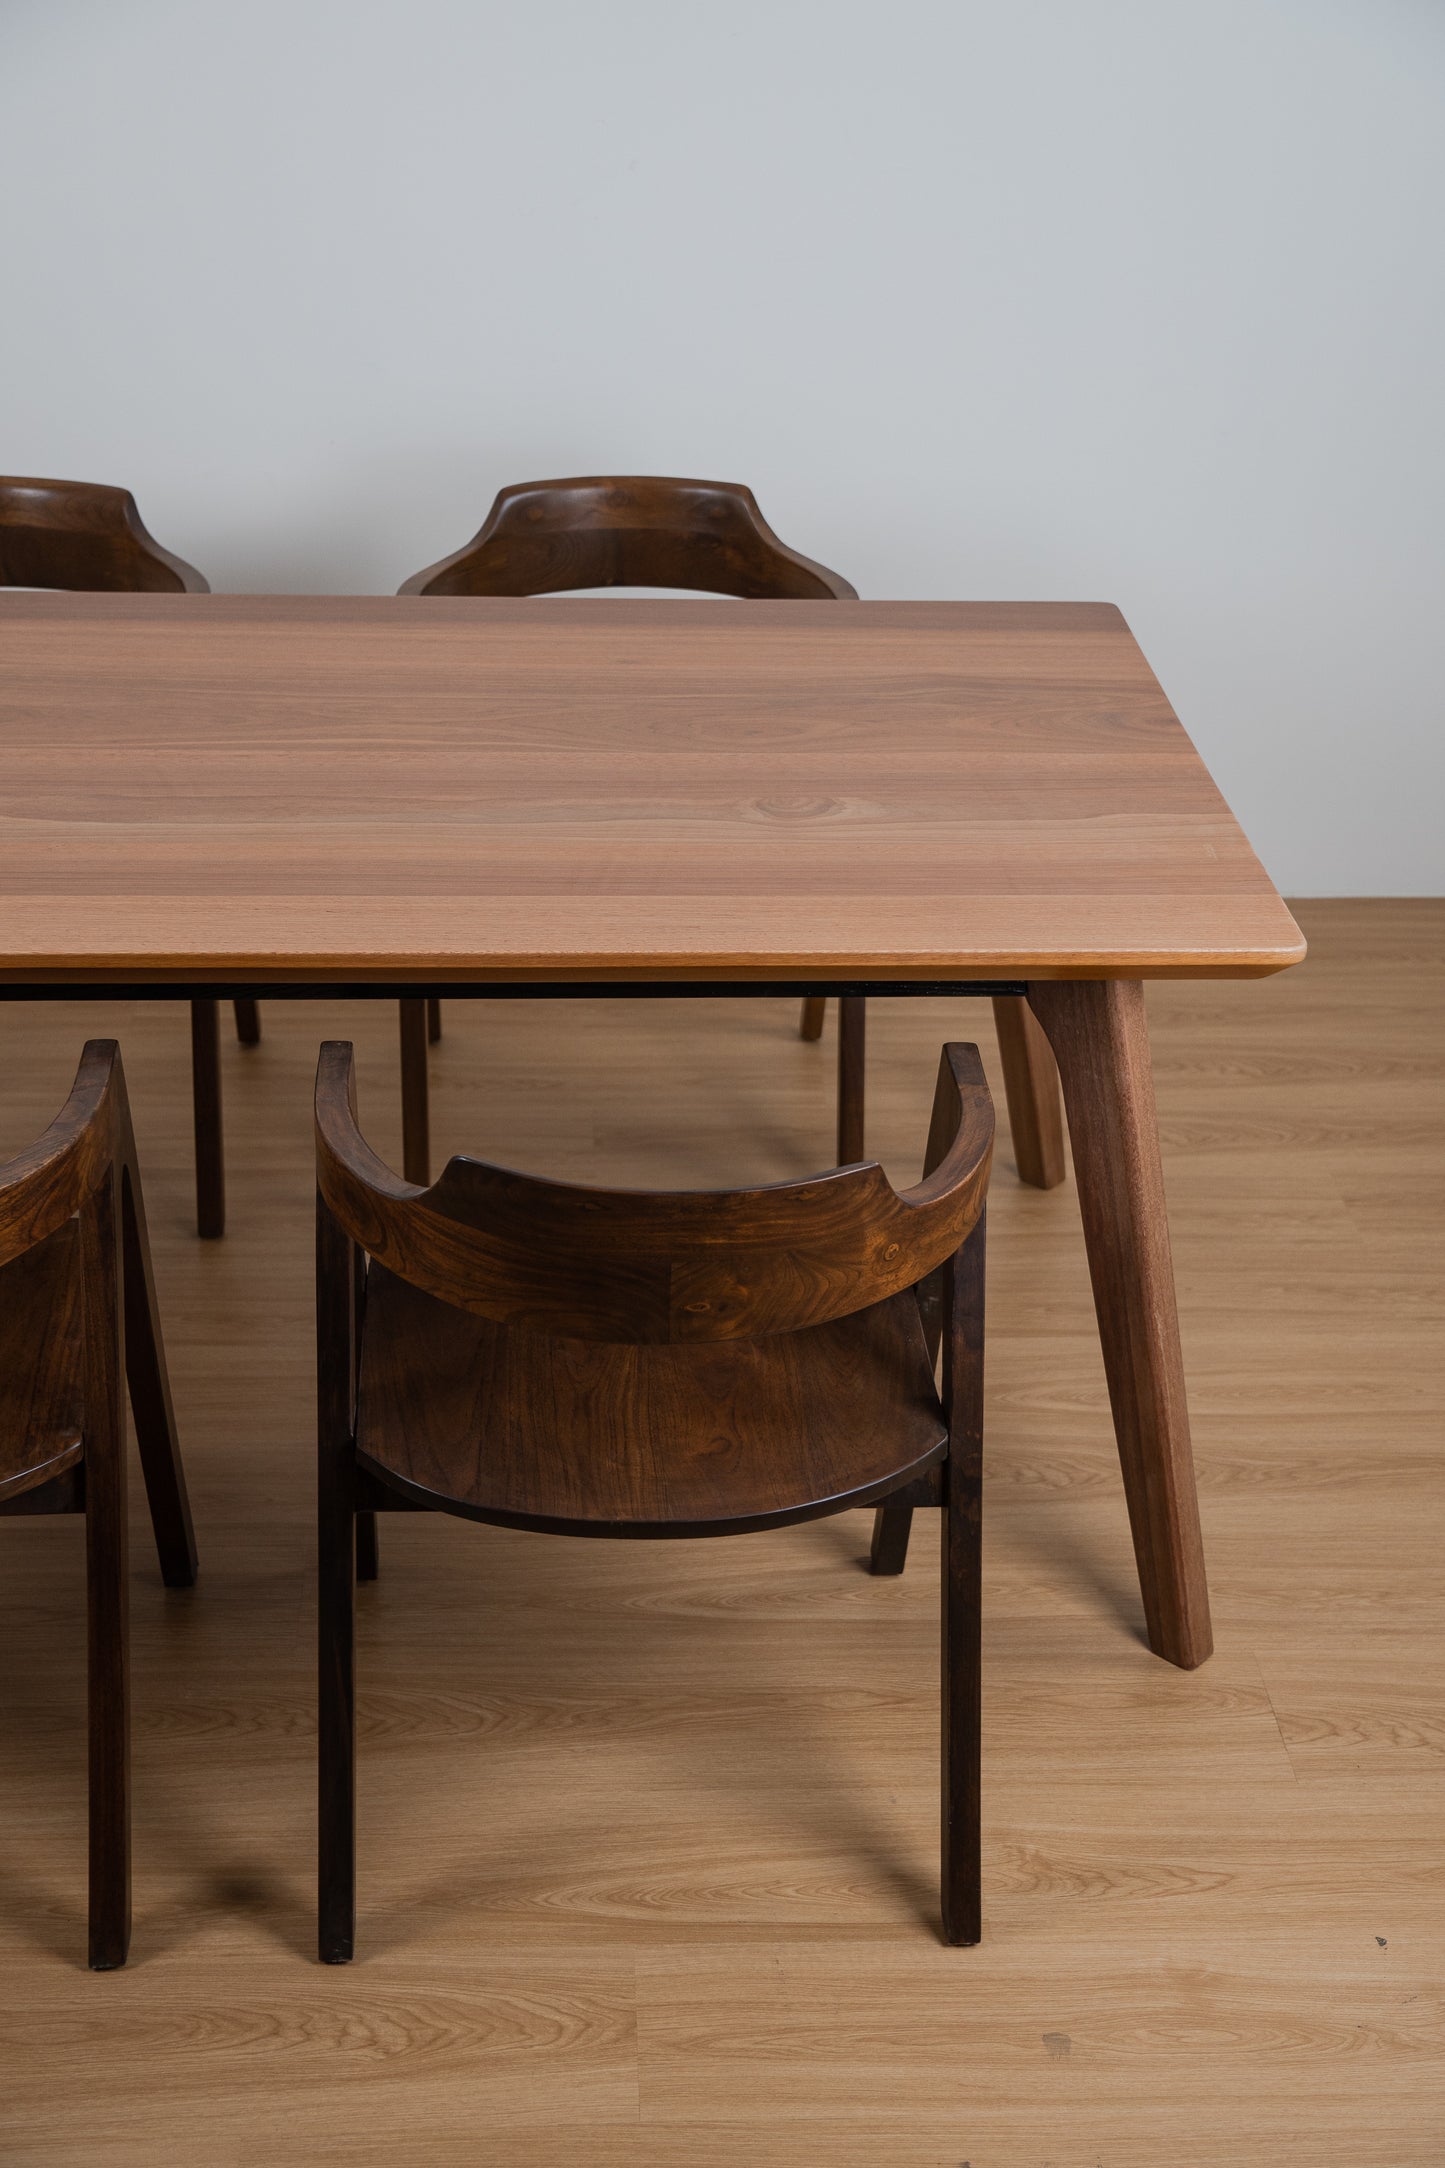 Peyan Nyatoh Wood Table Set